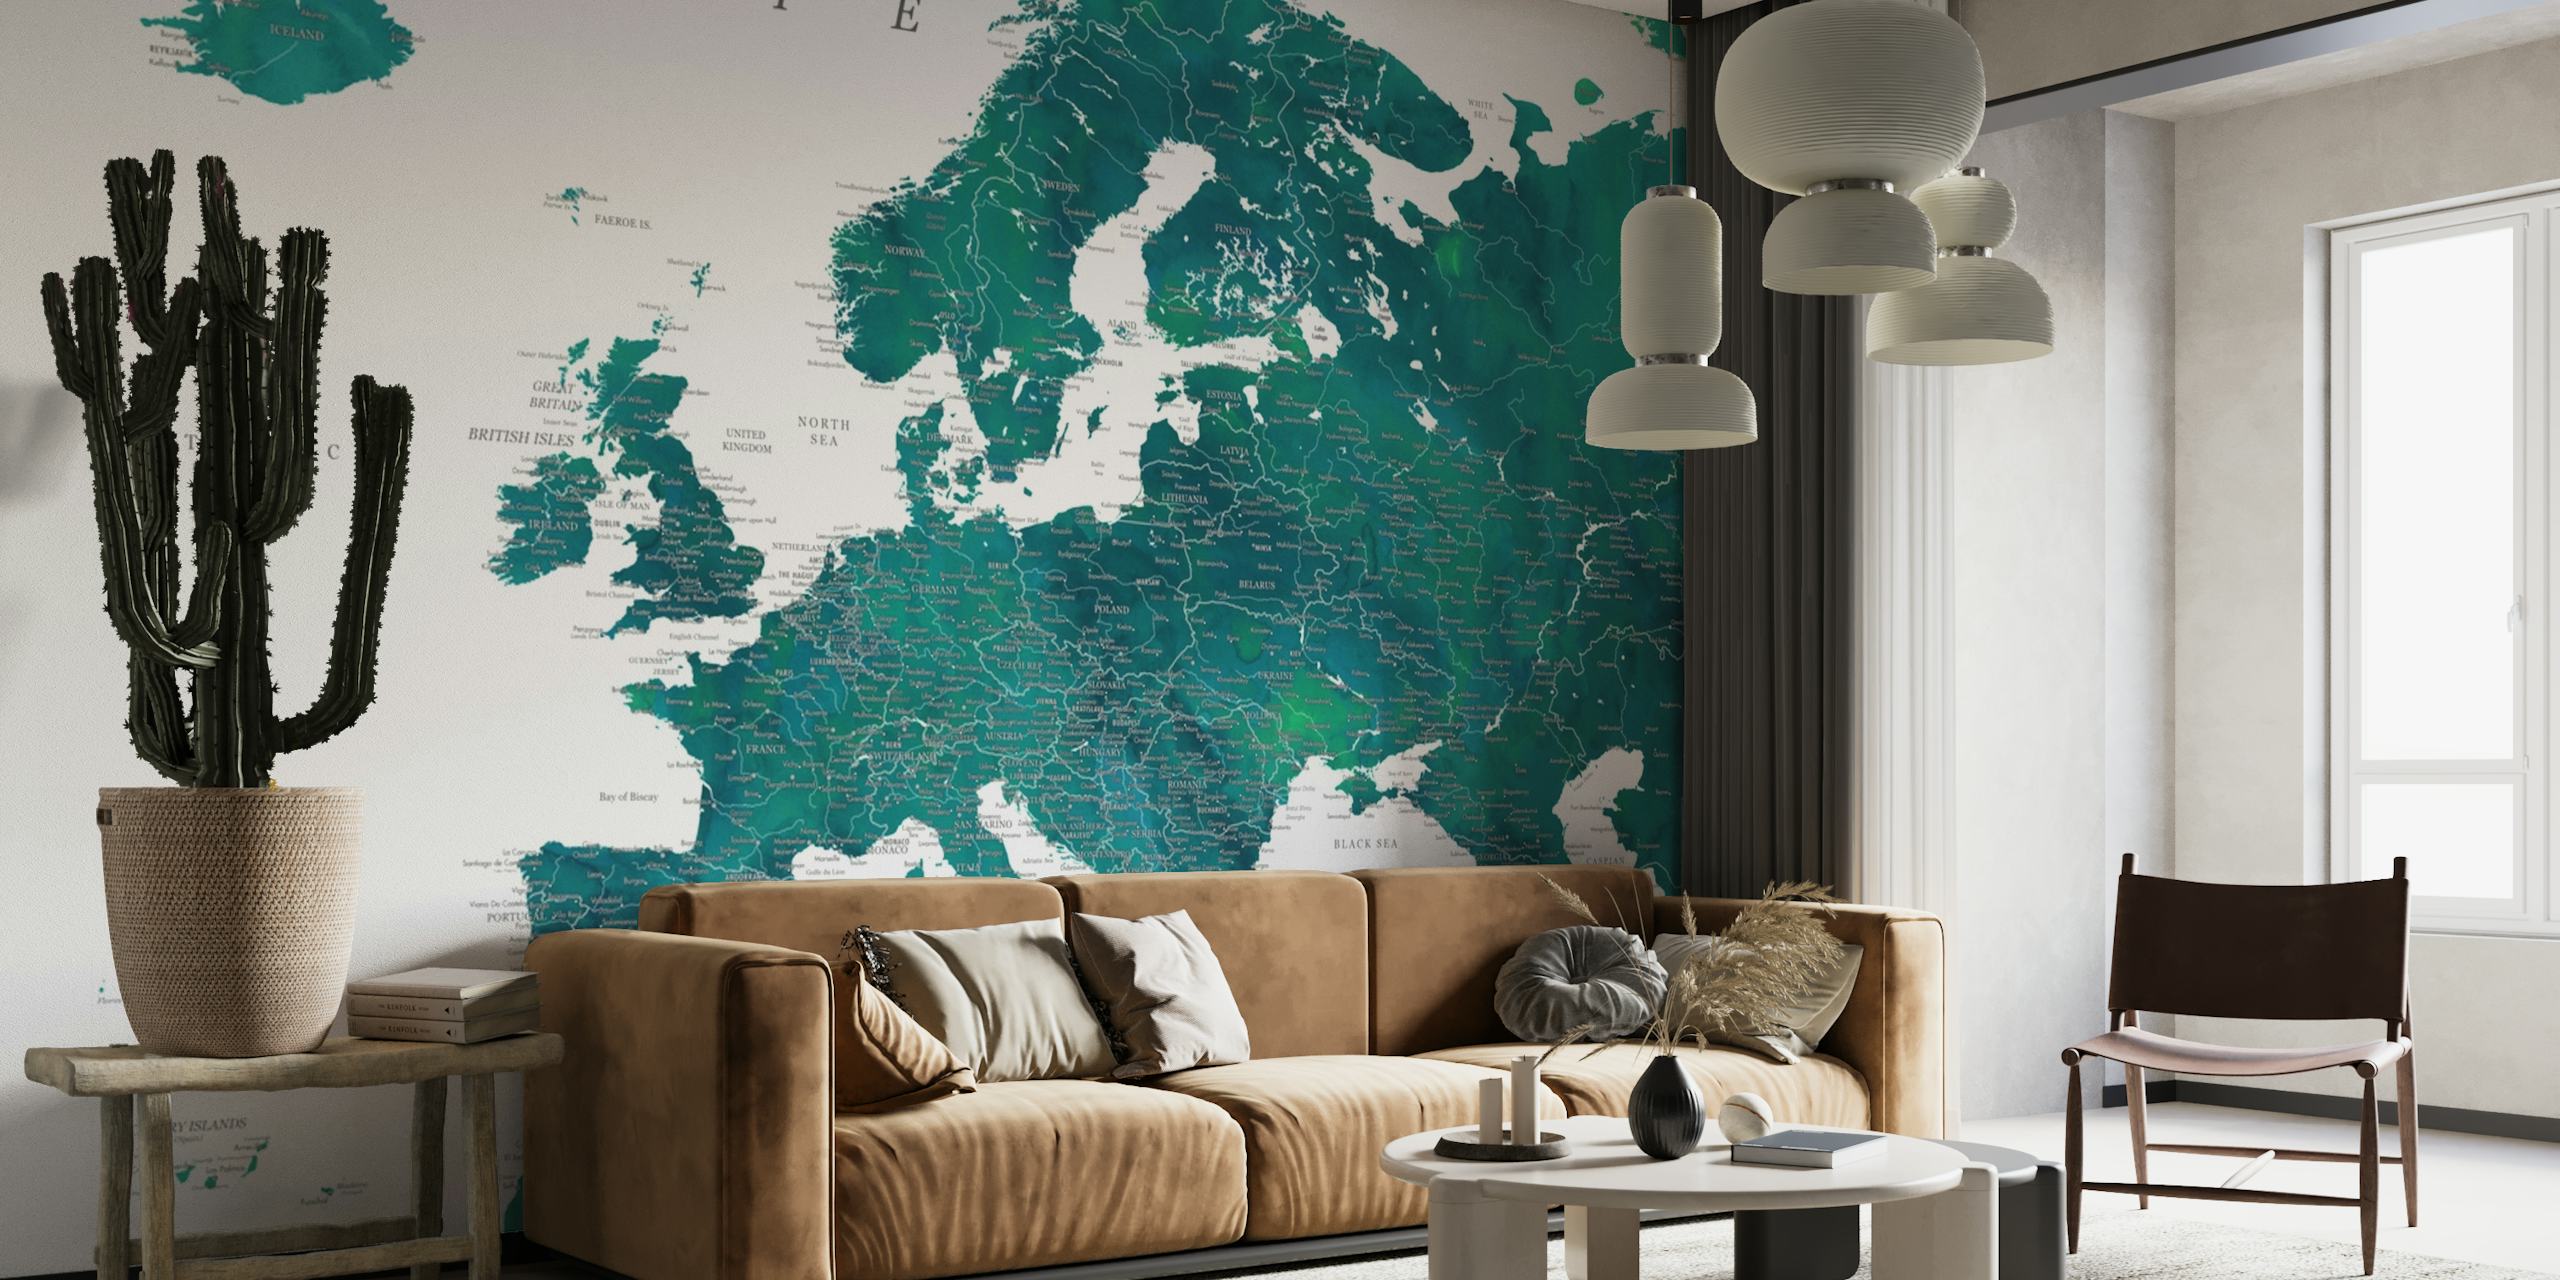 Mapa detallado de Europa Mural de pared de Nyla que muestra colores vibrantes y detalles geográficos